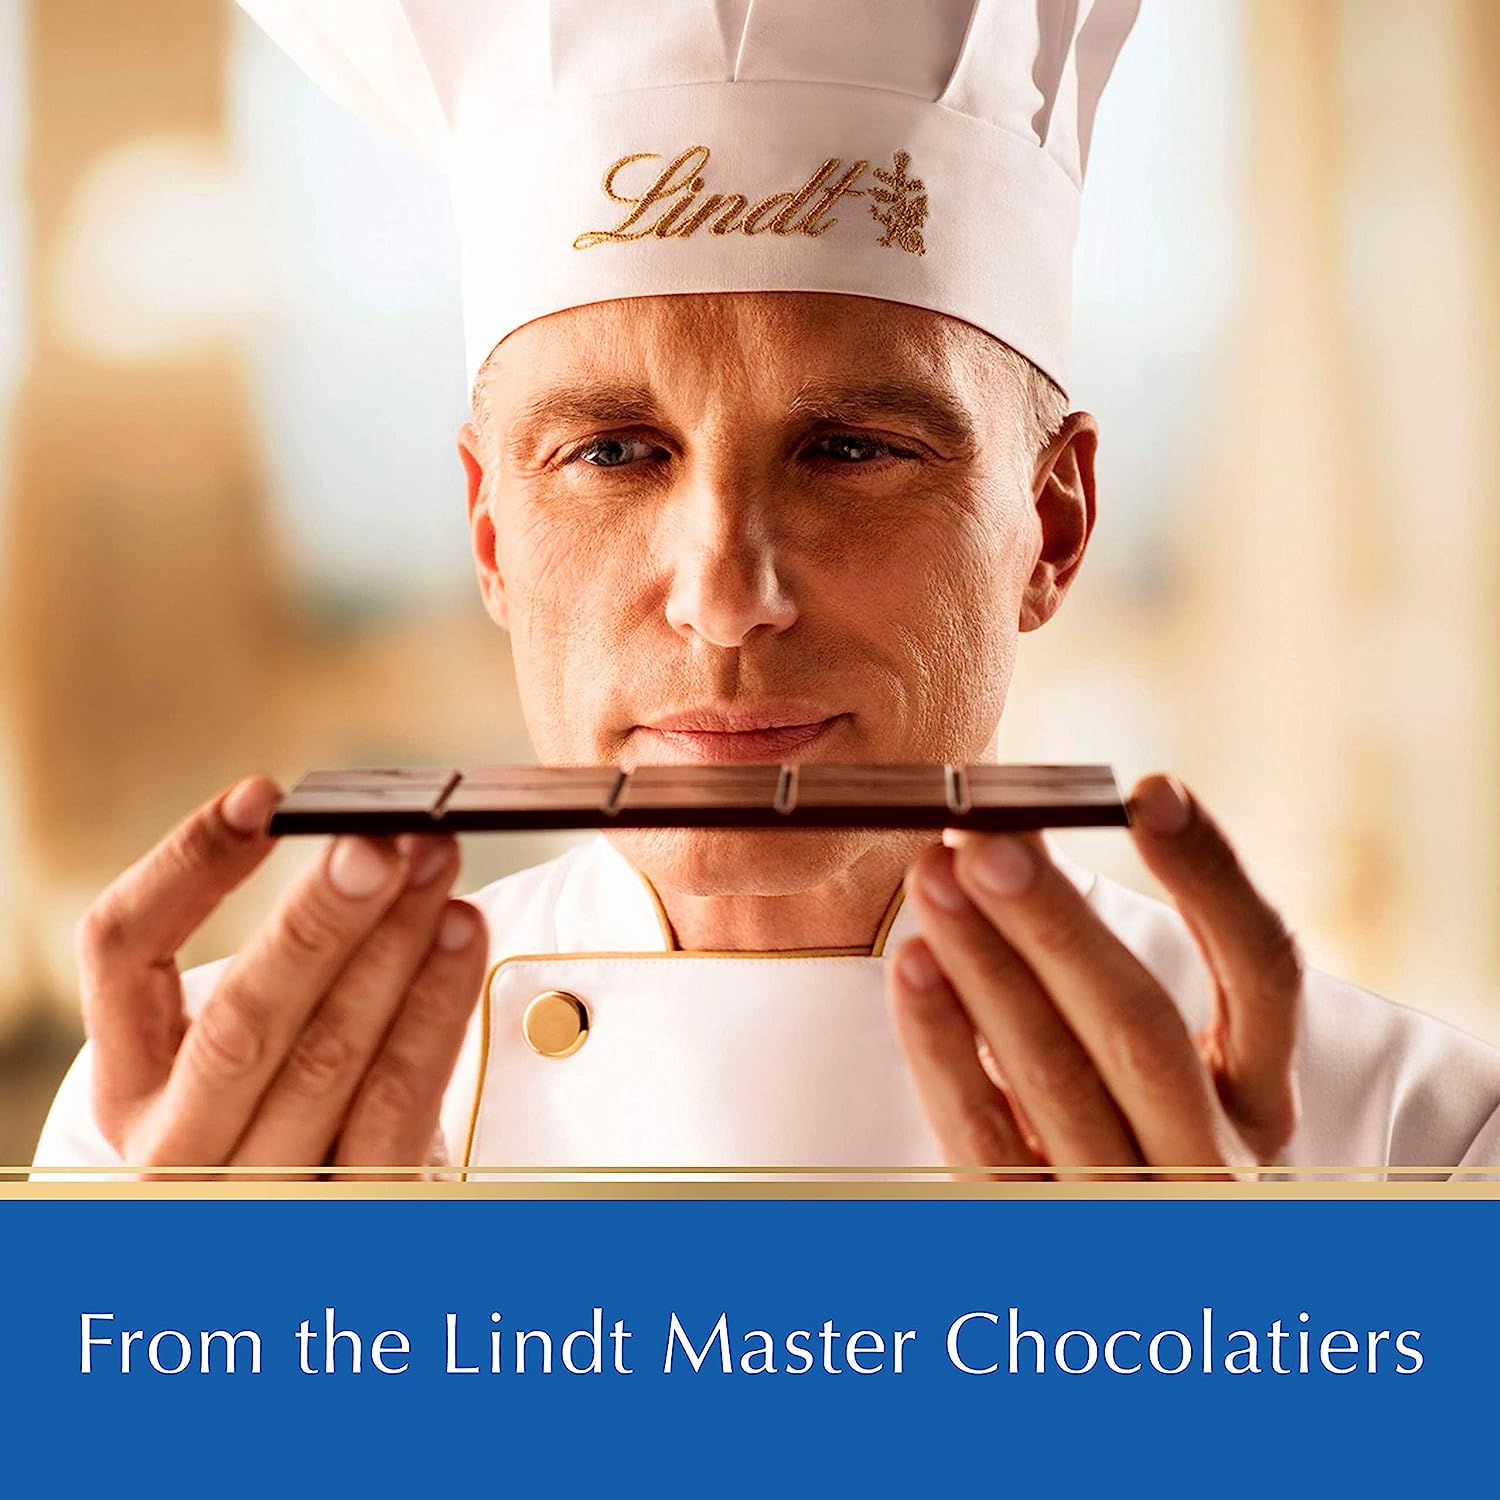 LINDT Excellence Bars  - Chocolate hàng đầu Thuỵ Sỹ đầy đủ hương vị 100g